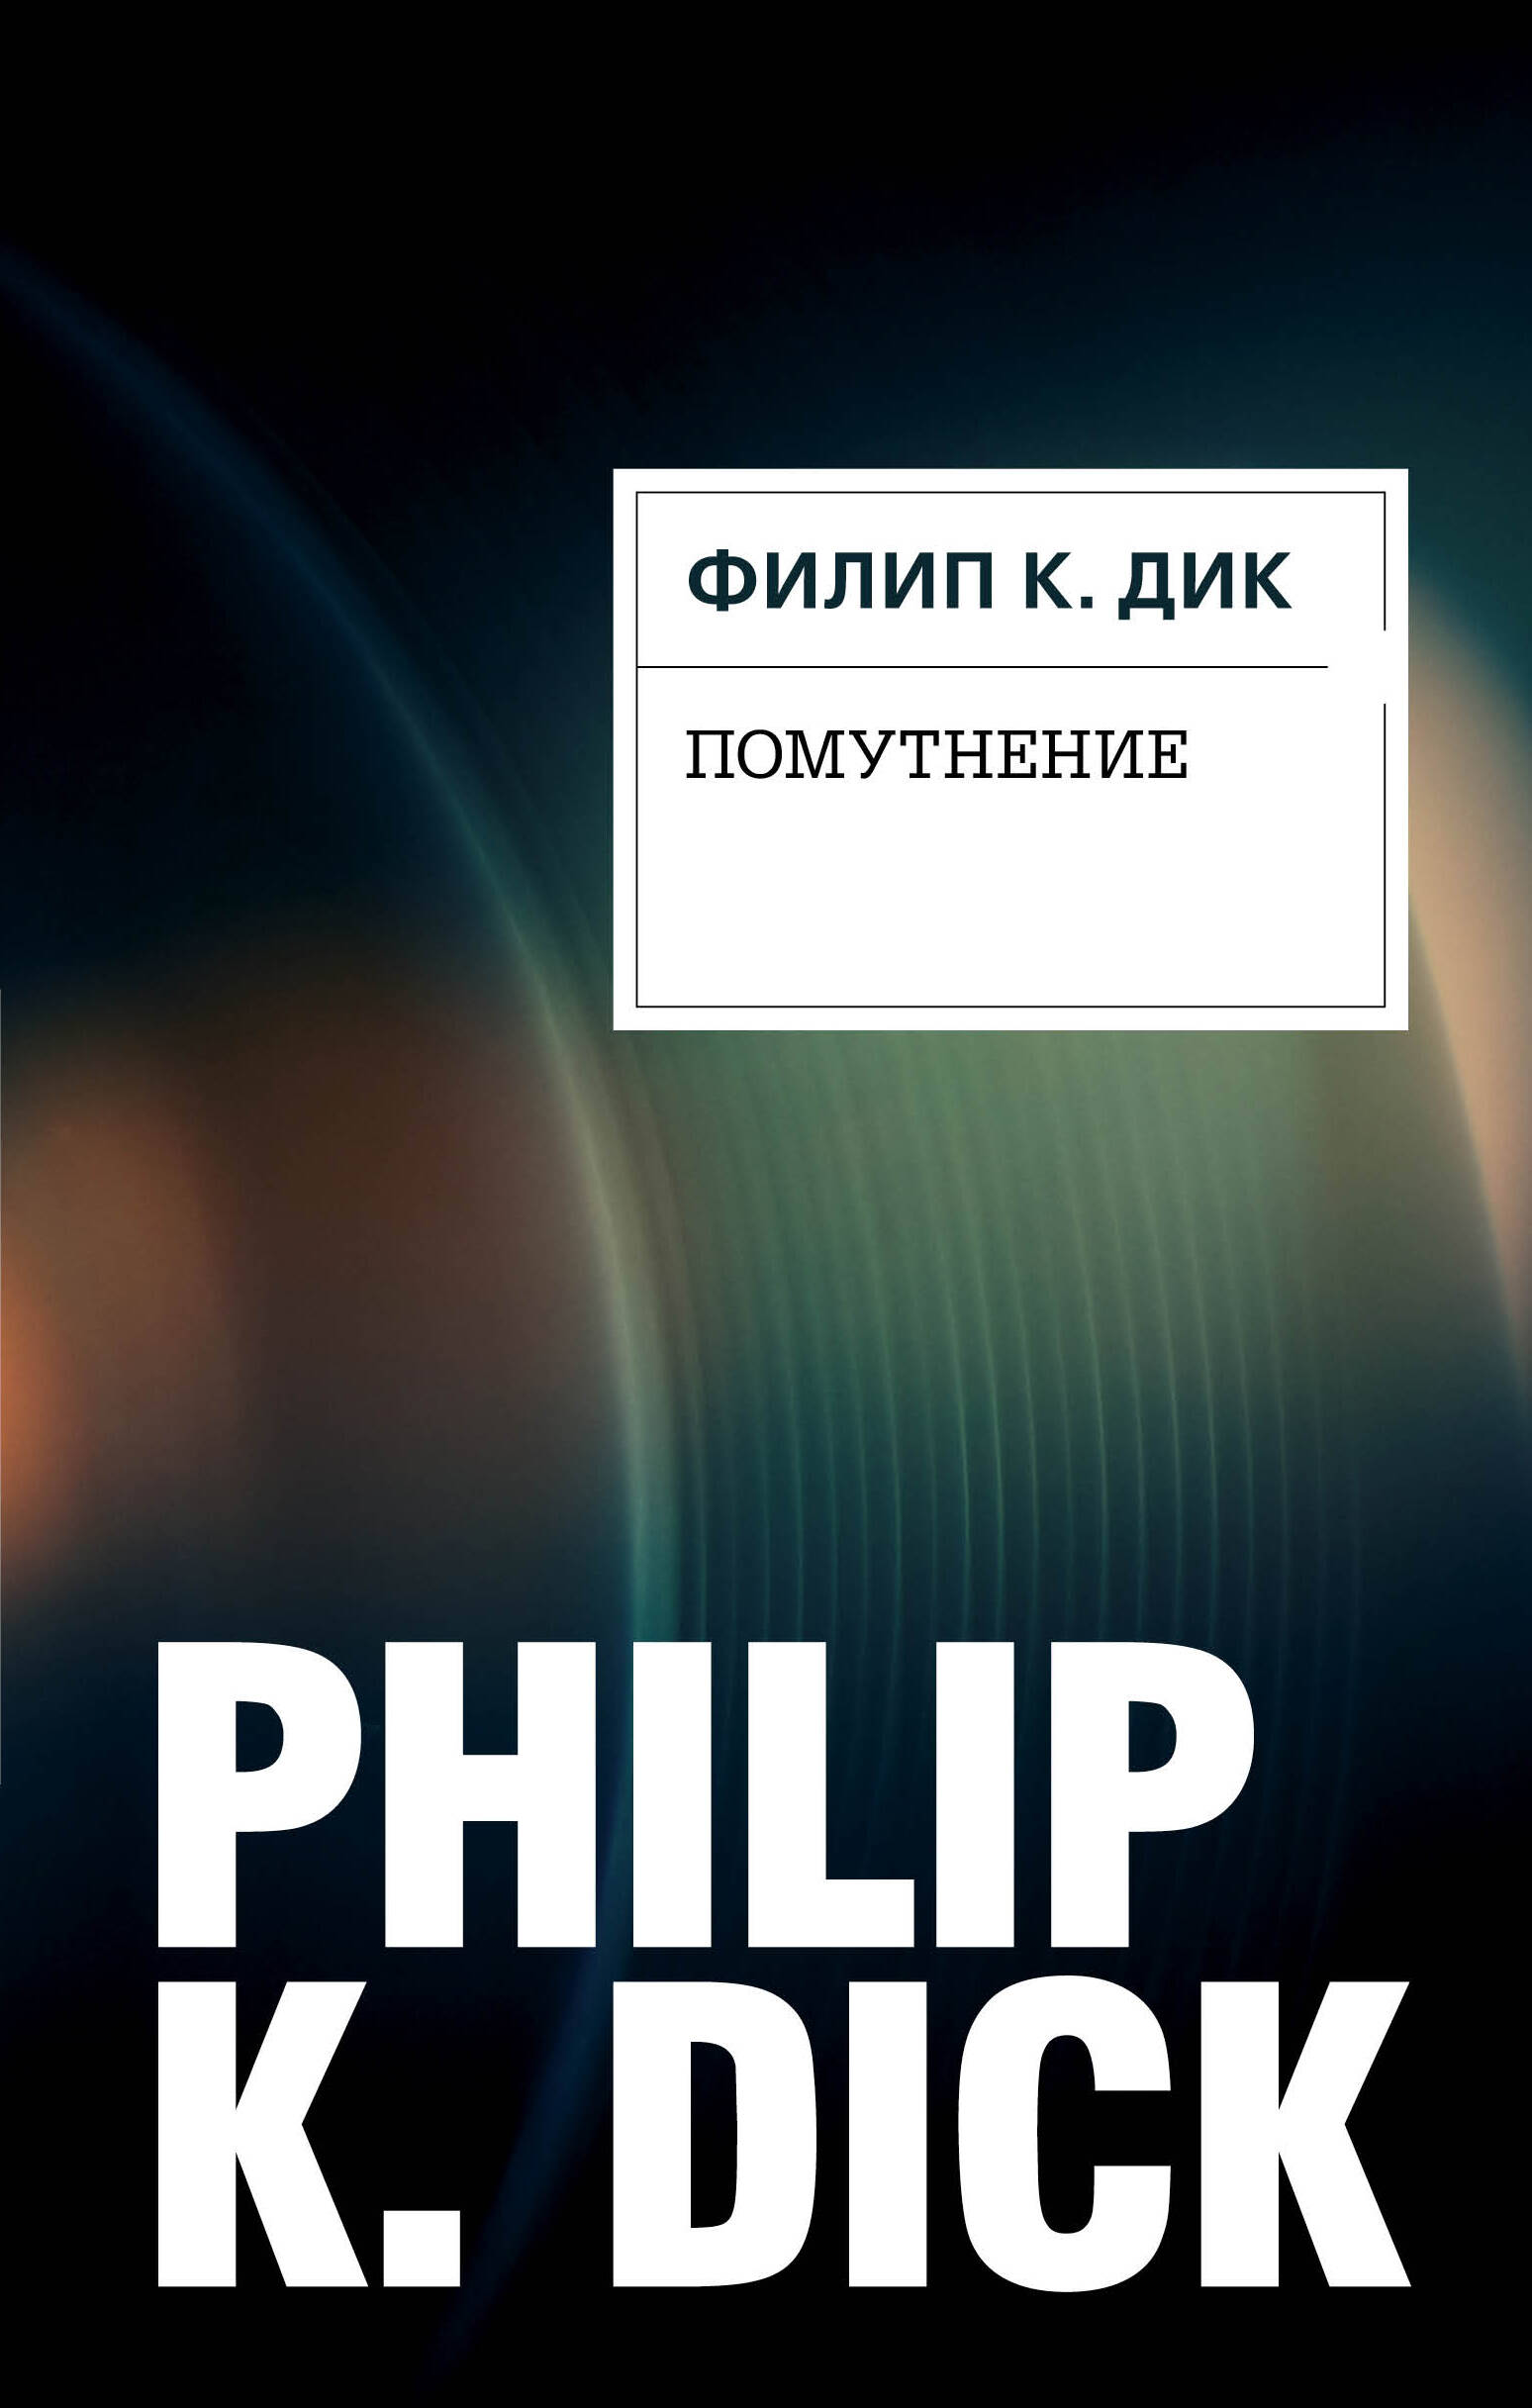 Дик Филип Киндред - Помутнение